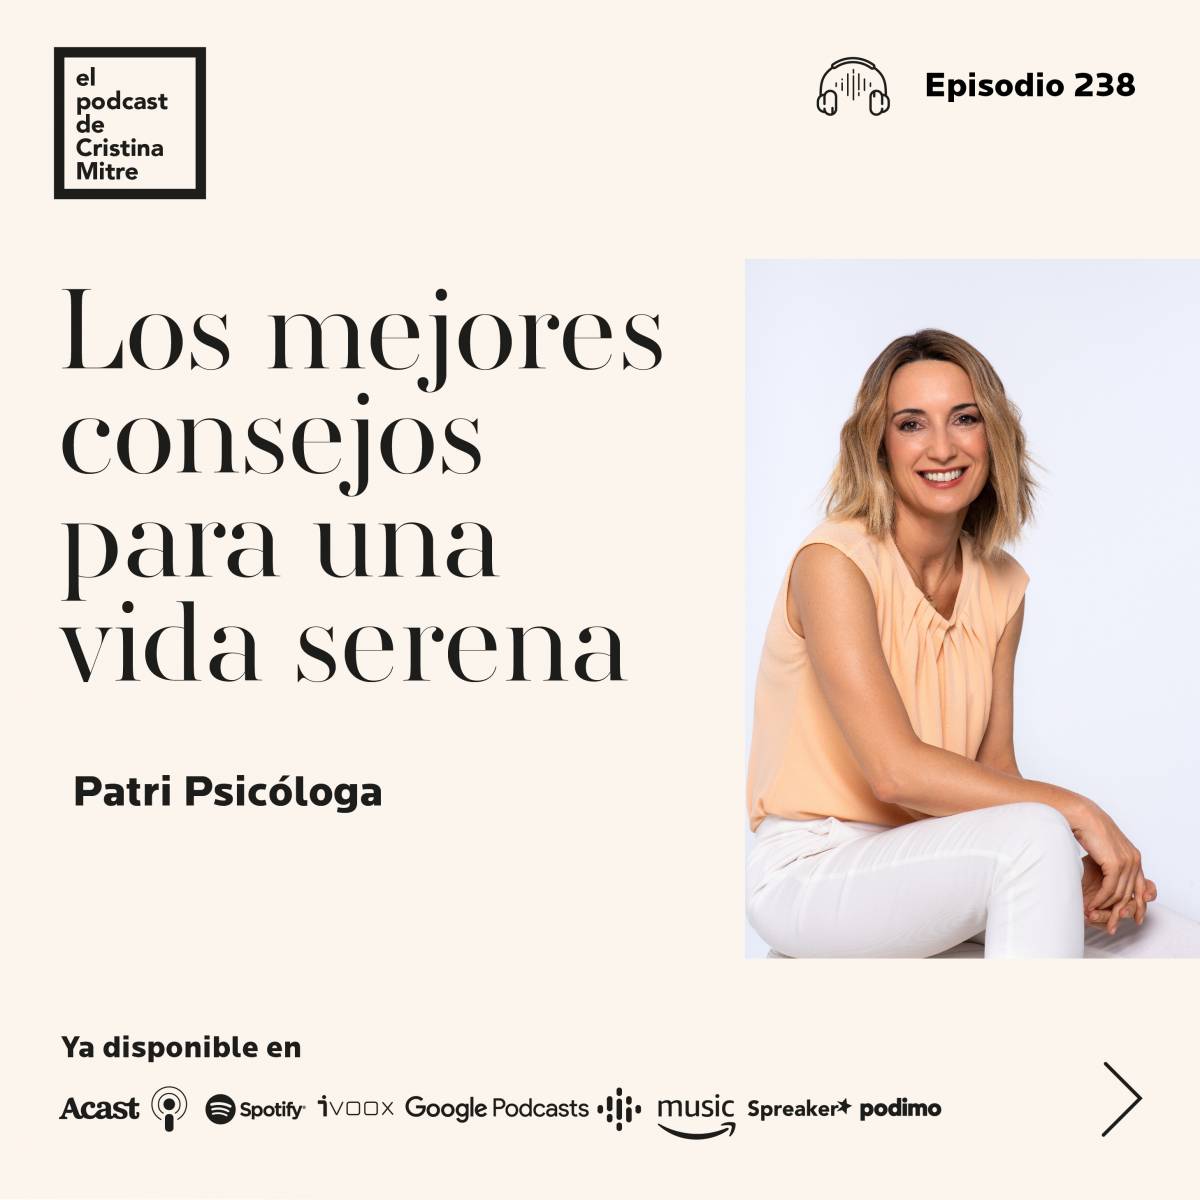 El podcast de Cristina Mitre Patri Psicologa vida serena